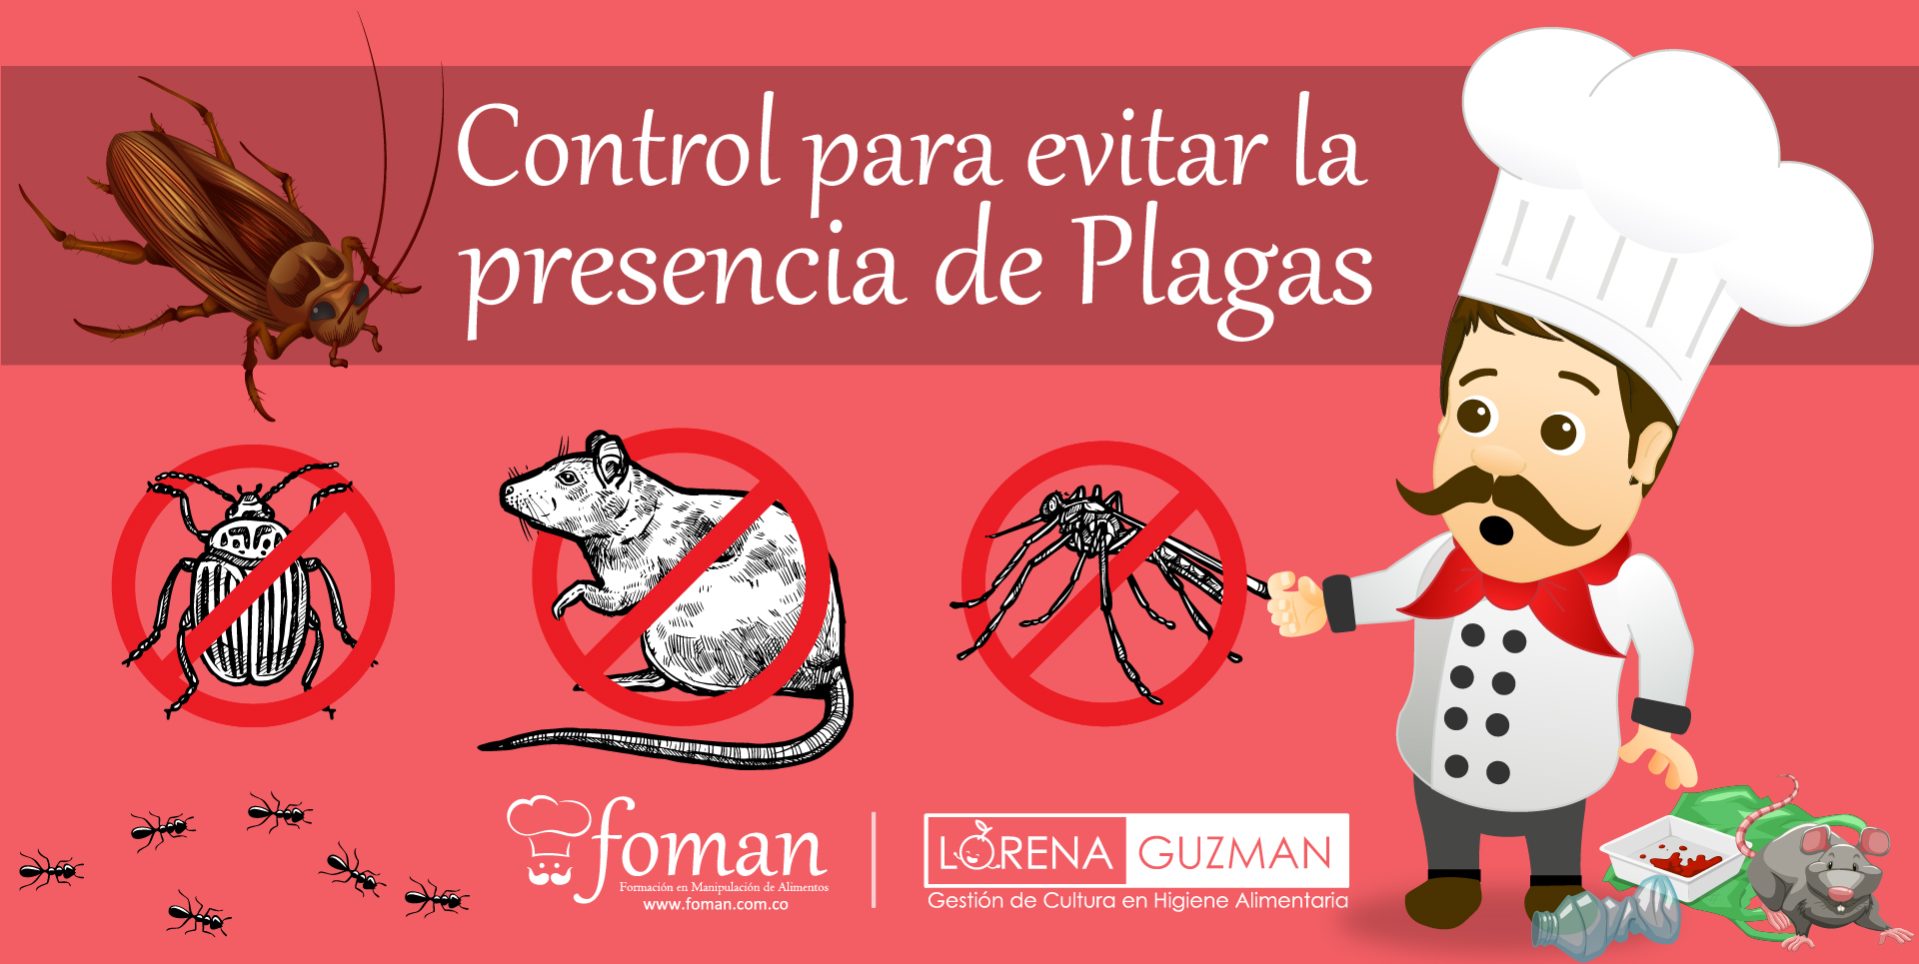 Control para evitar la presencia de Plagas